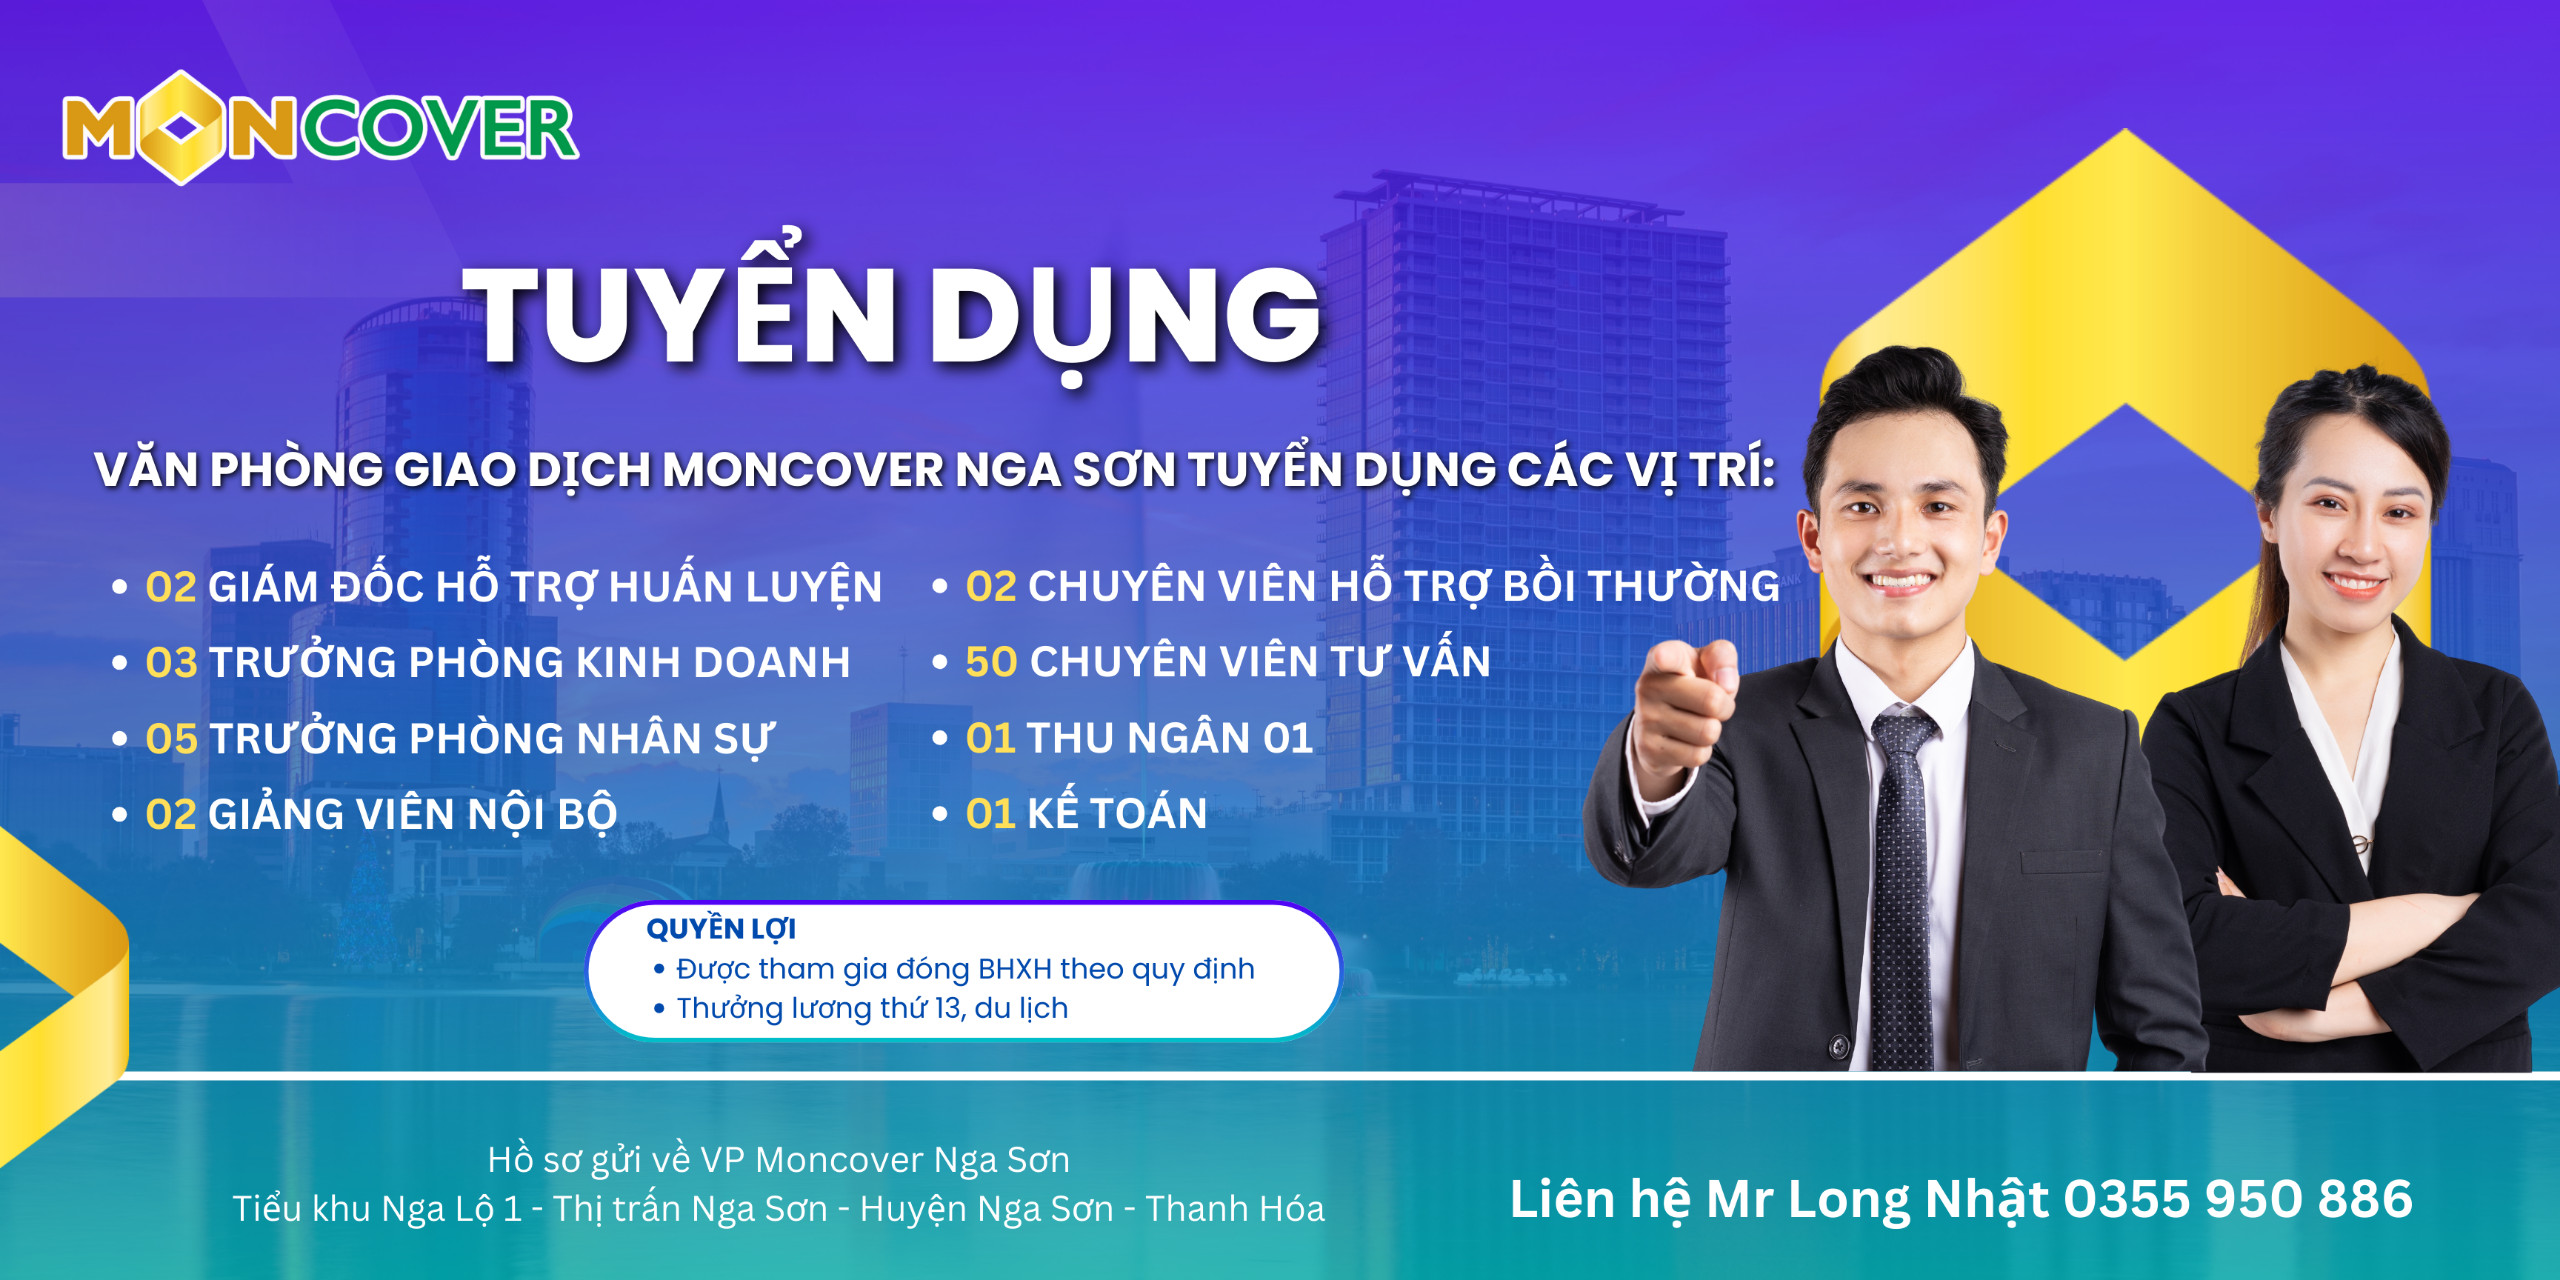 Tin tuyển dụng - Văn phòng giao dịch Moncover Nga Sơn